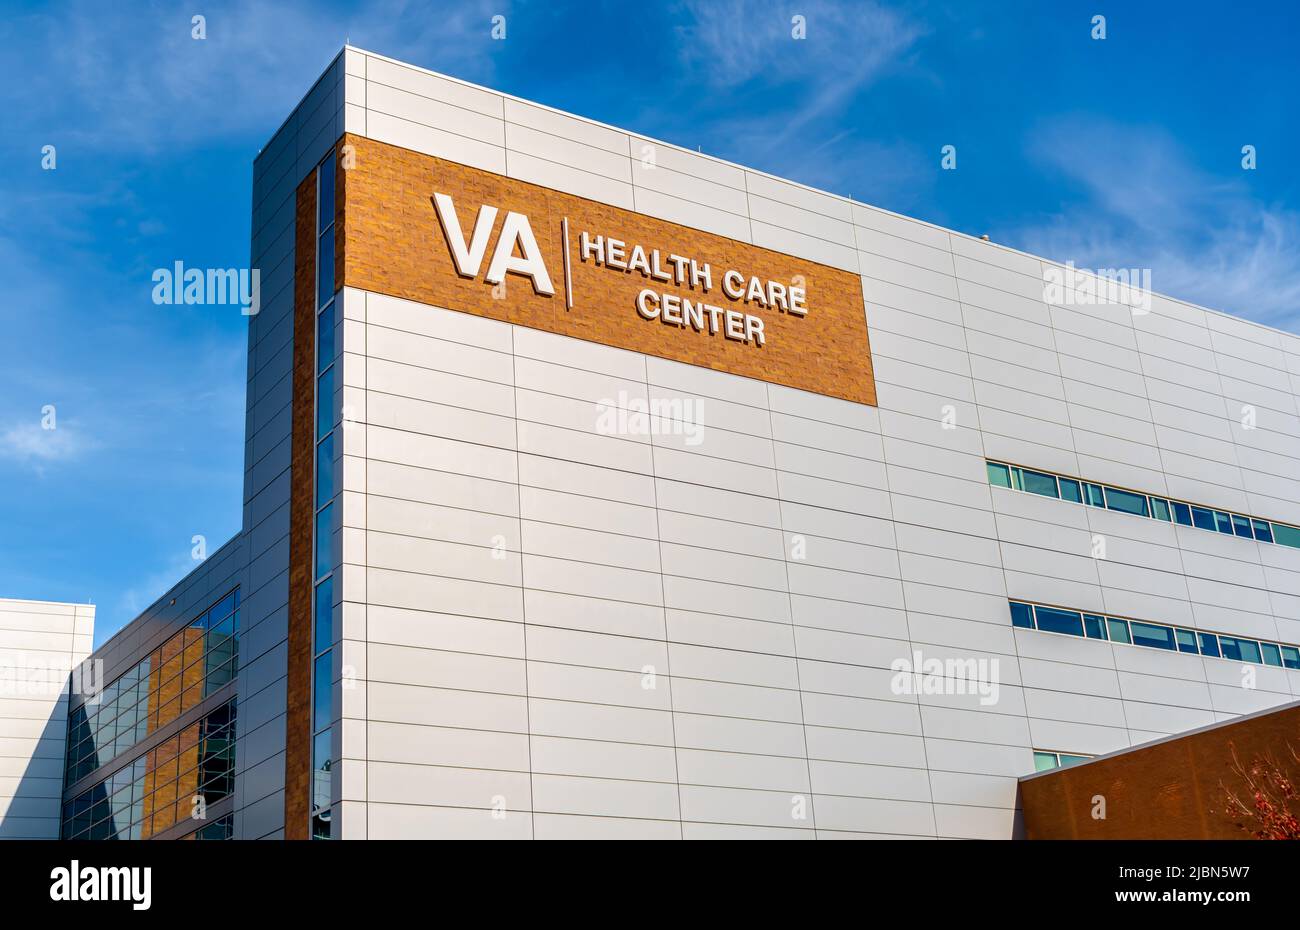 La facciata esterna del VA Health Care Center e la segnaletica con il logo in una giornata luminosa e soleggiata, con cielo blu, nuvole di nocciole, pavimenti e finestre. Foto Stock